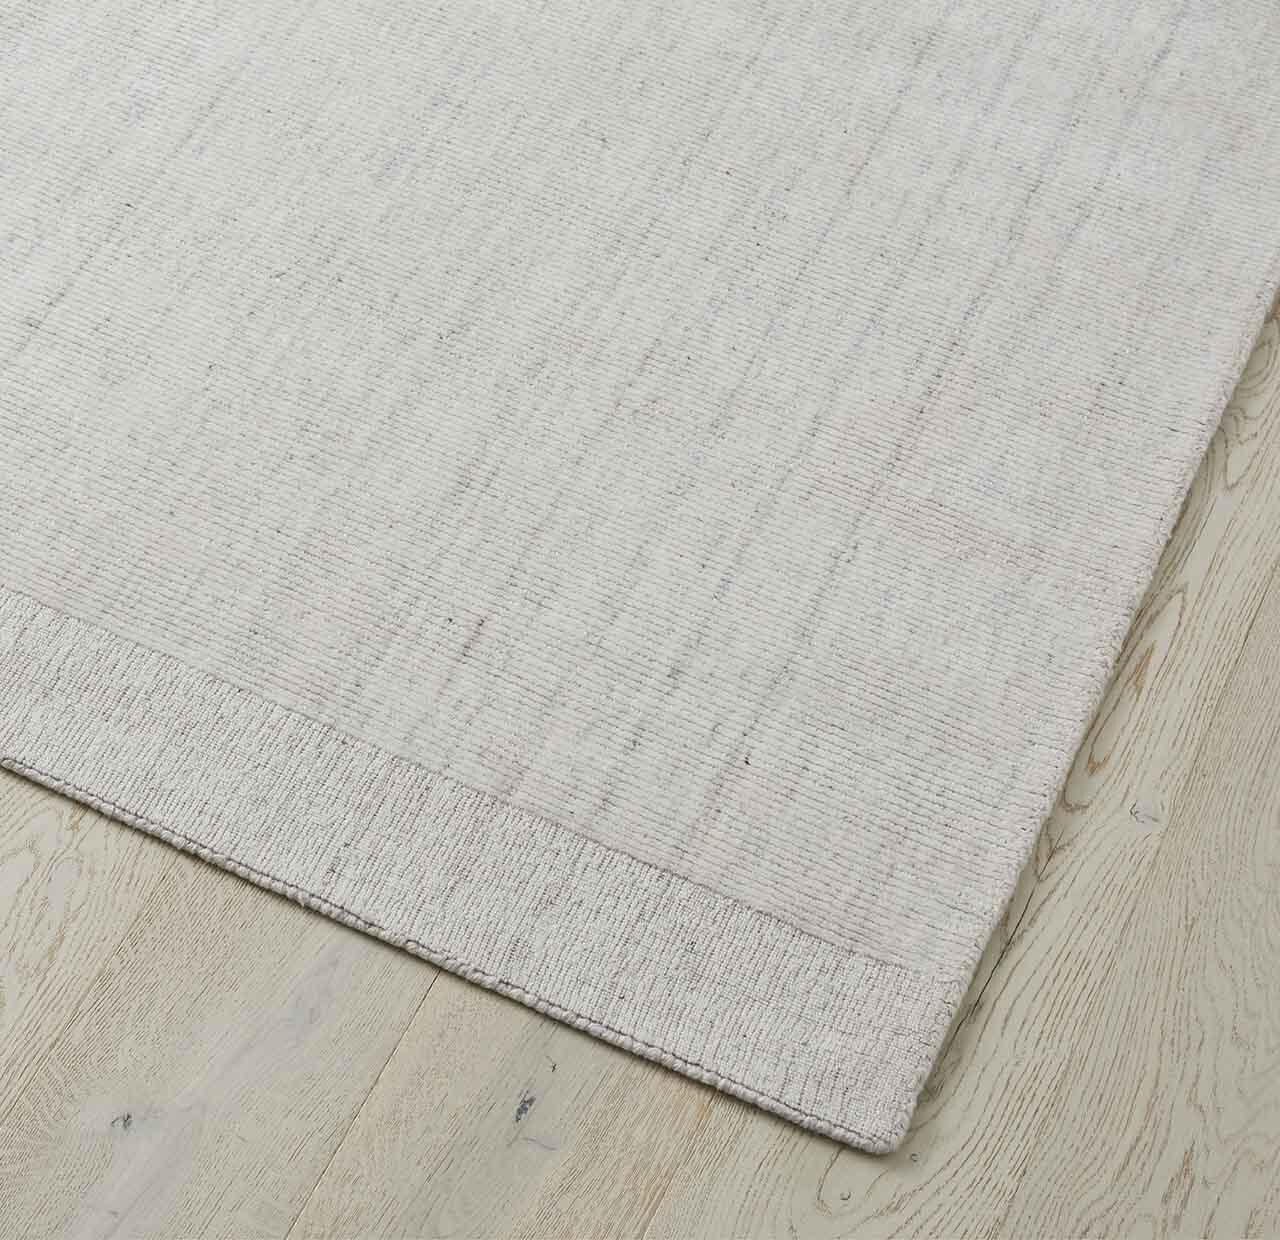 Weave Travertine Floor Rug - Marble - 2m x 3m - RugRTV71MARB9326963003164 1